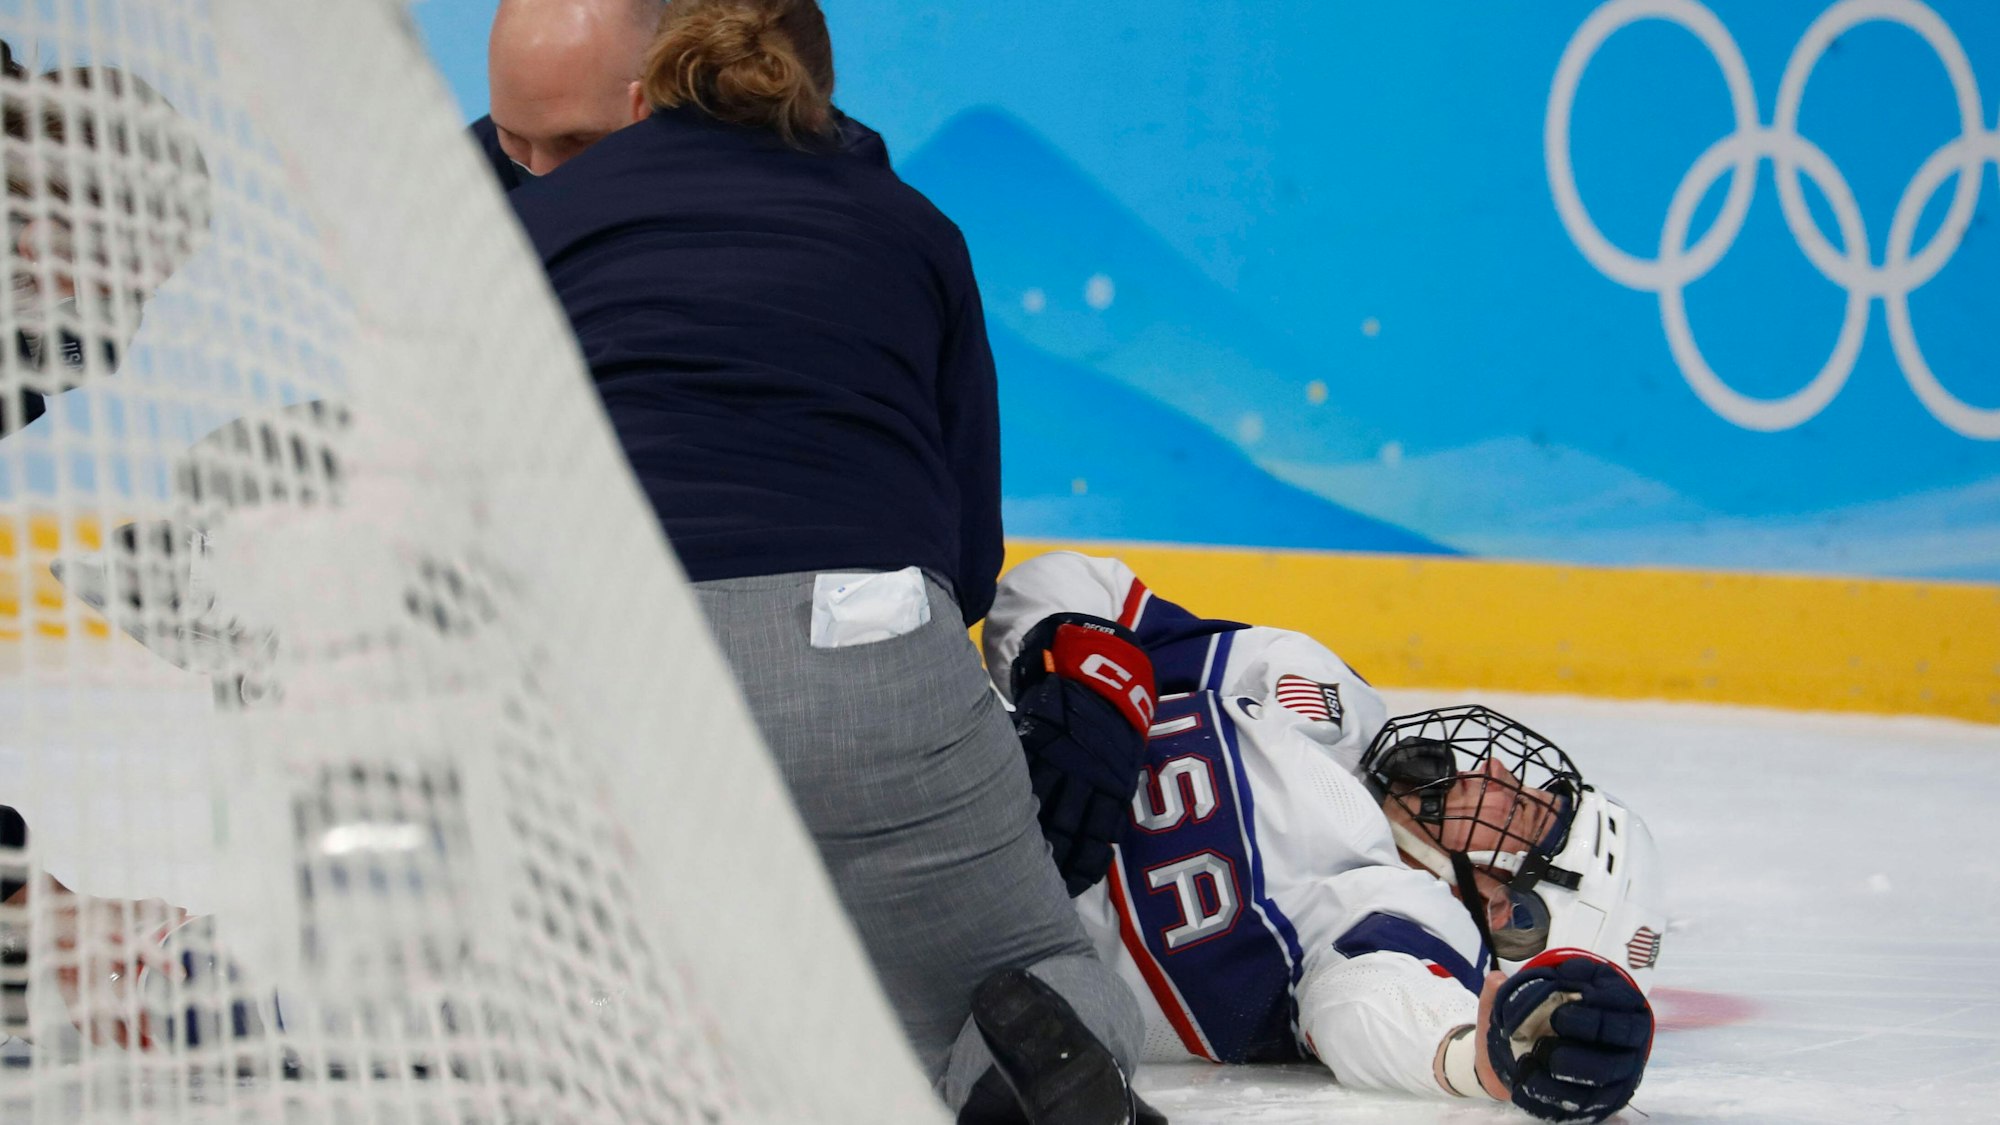 Die verletzte Eishockey-Spielerin Brianna Decker wird von Betreuern des US-Teams behandelt.